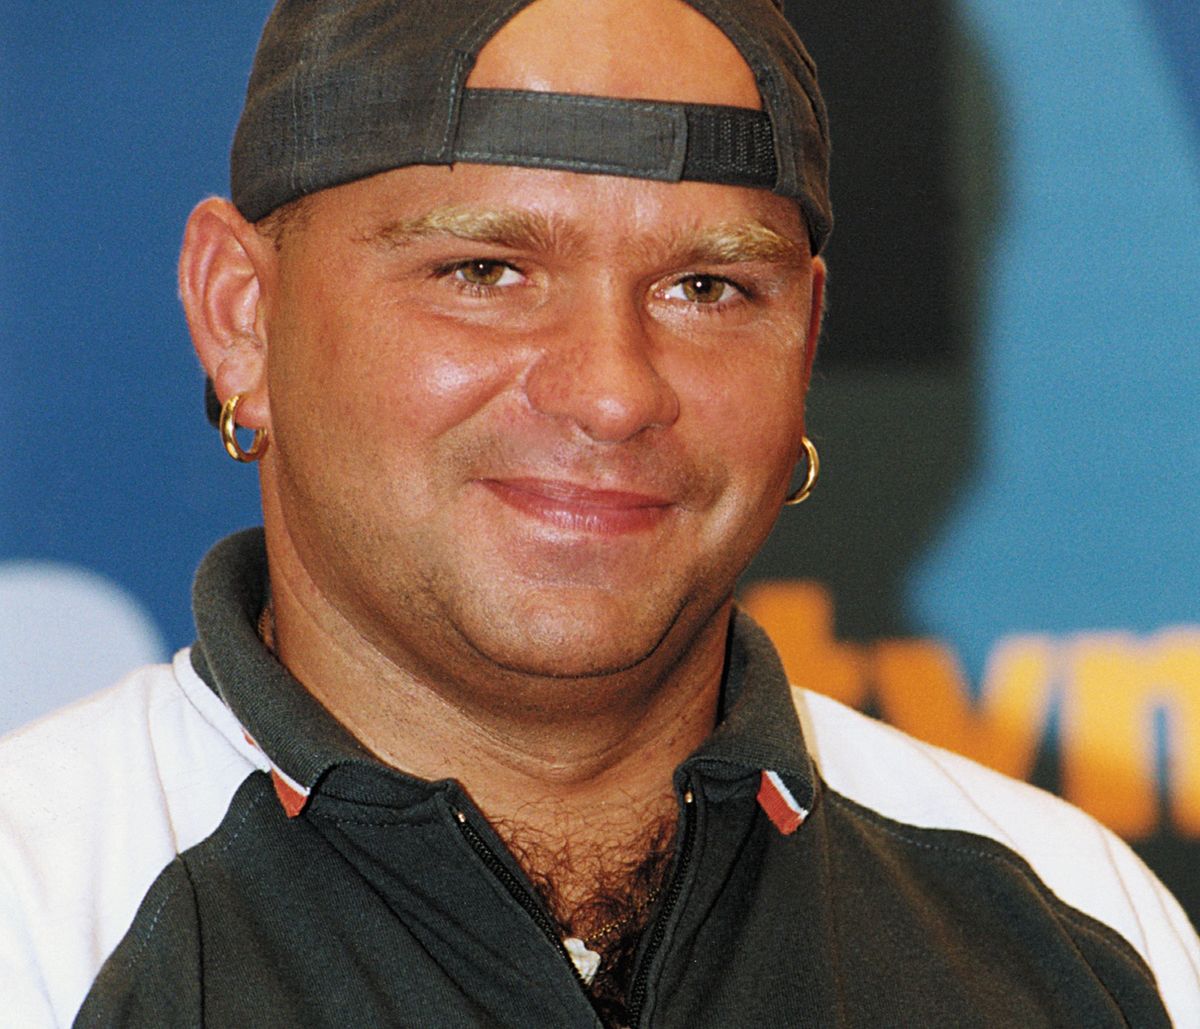 Klaudiusz Ševković zdobył popularność dzięki udziałowi w reality show "Big Brother"